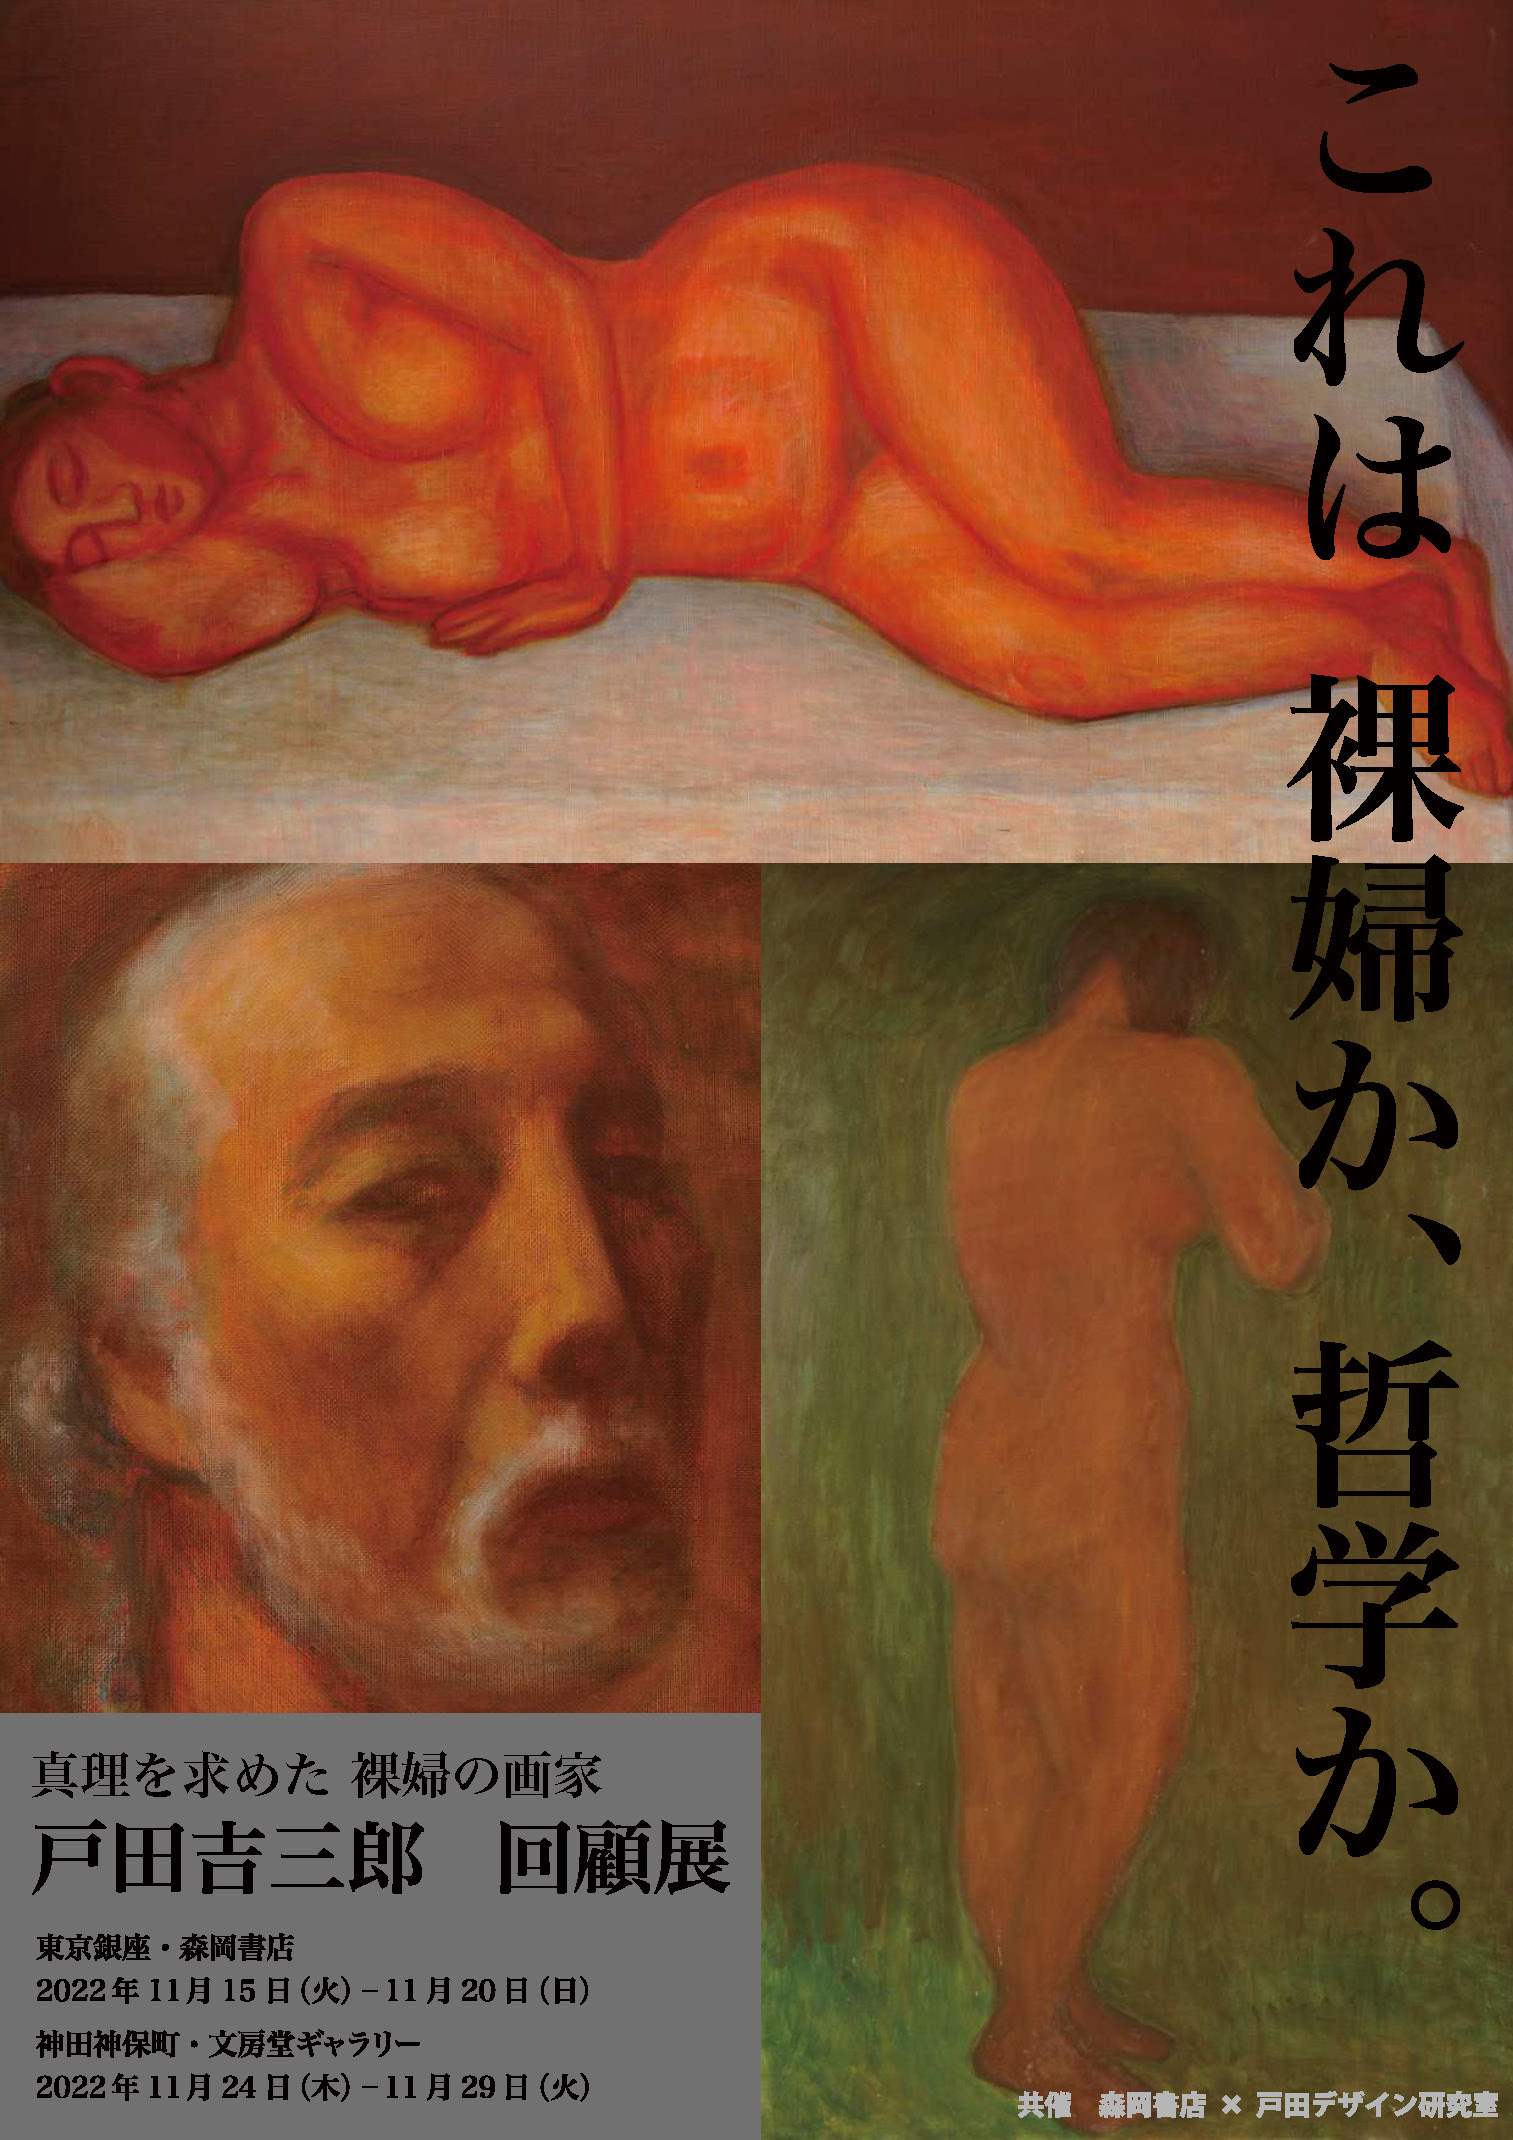 戸田吉三郎 回顧展〜これは 裸婦か、哲学か〜